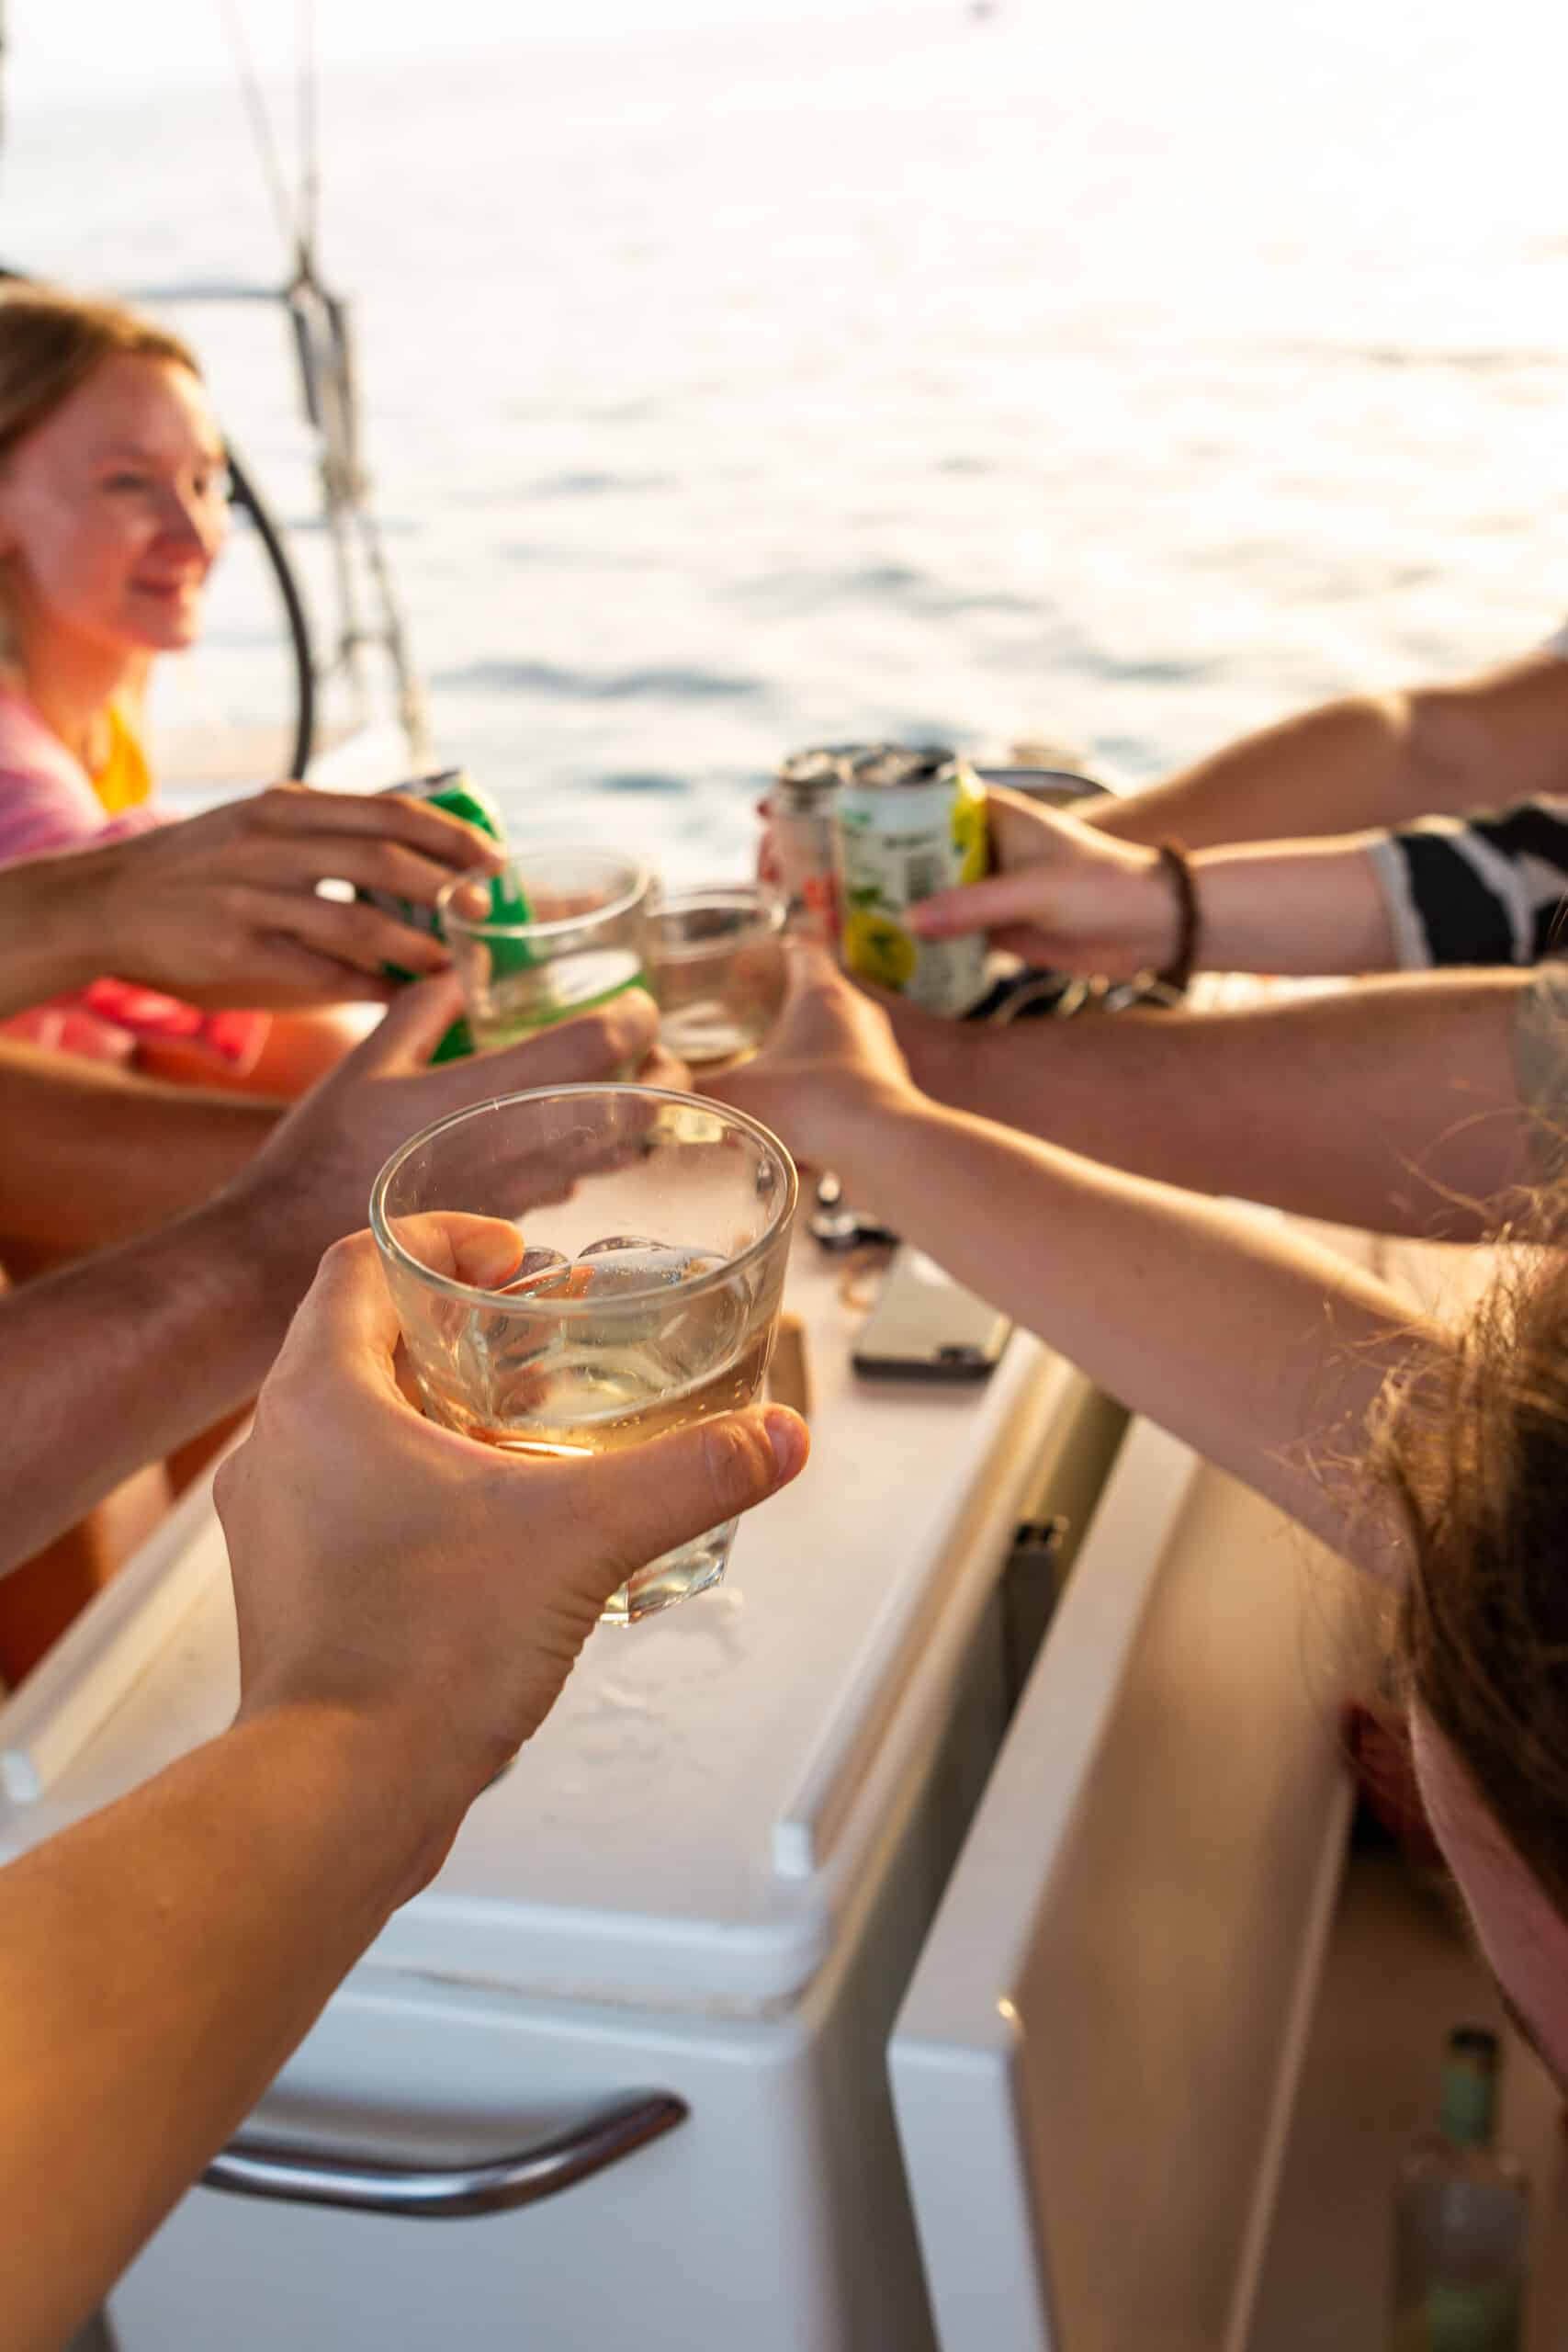 Freunde stoßen bei Sonnenuntergang auf einer Segelyacht an und genießen Getränke mit Blick auf das Meer im Hintergrund – ein Zeichen für ein entspanntes geselliges Beisammensein.